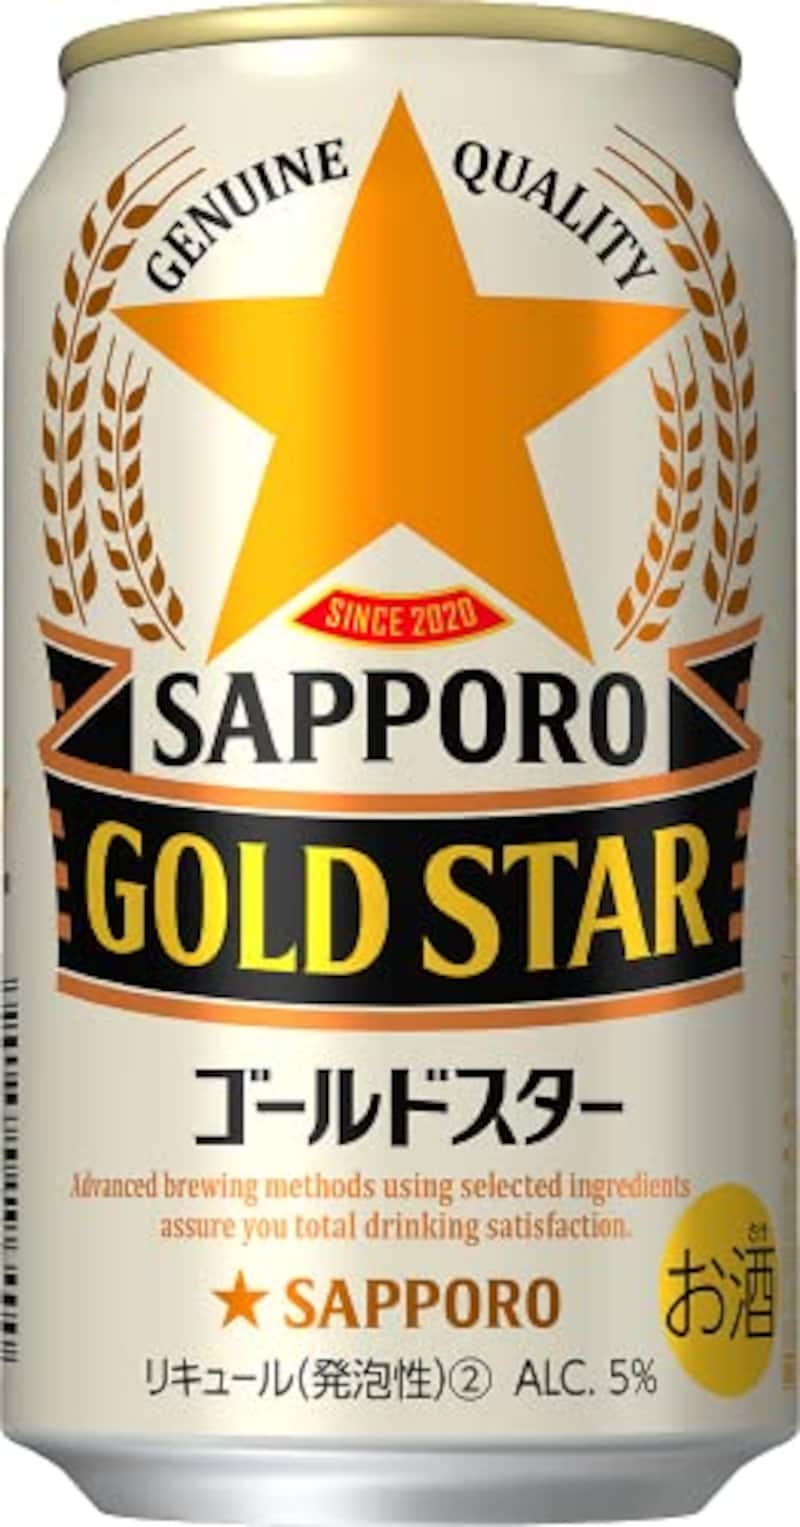 サッポロビール,GOLD STAR